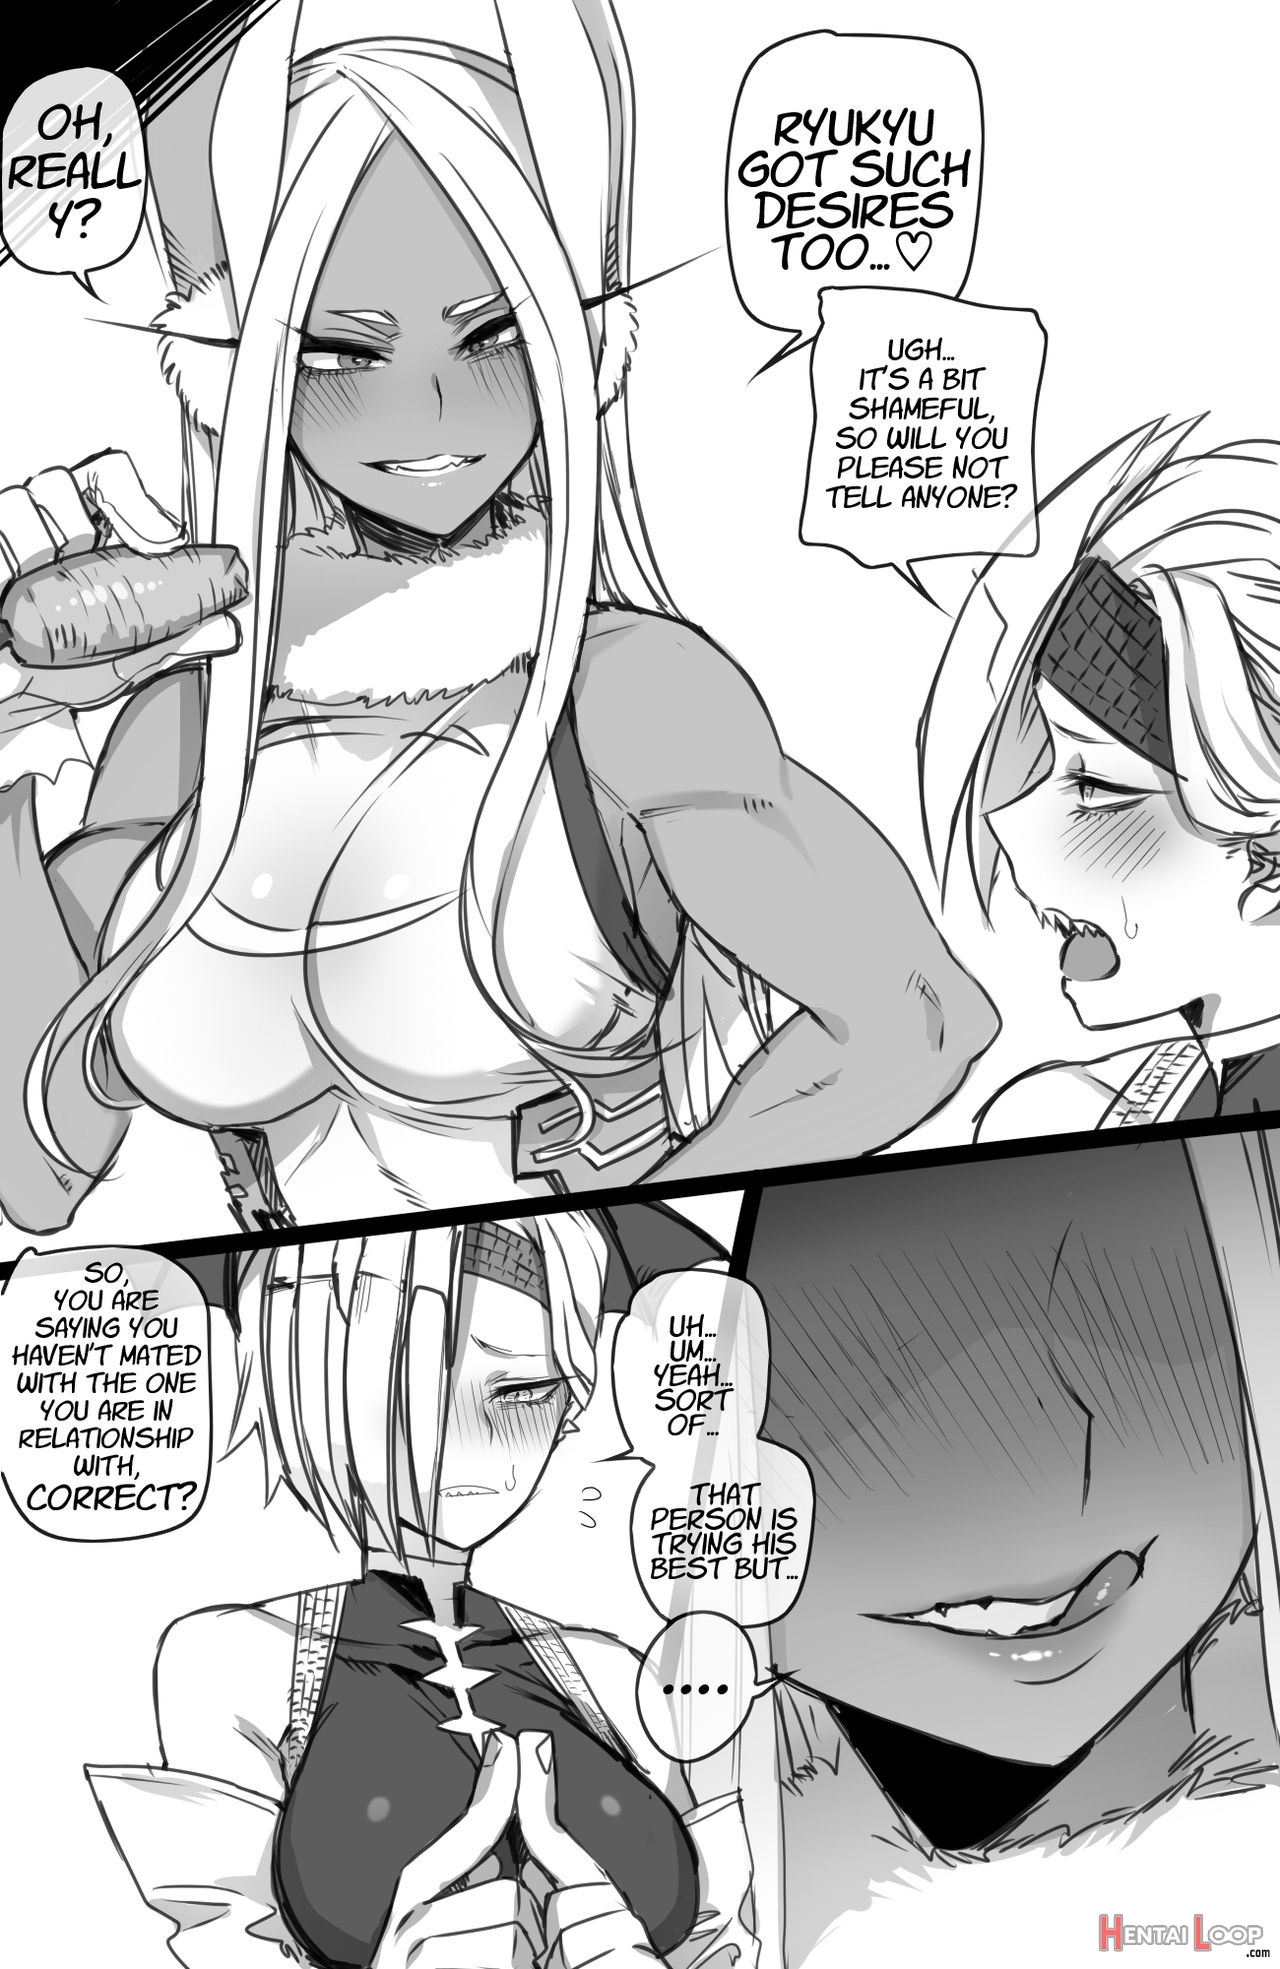 Miruko & Ryukyu page 3